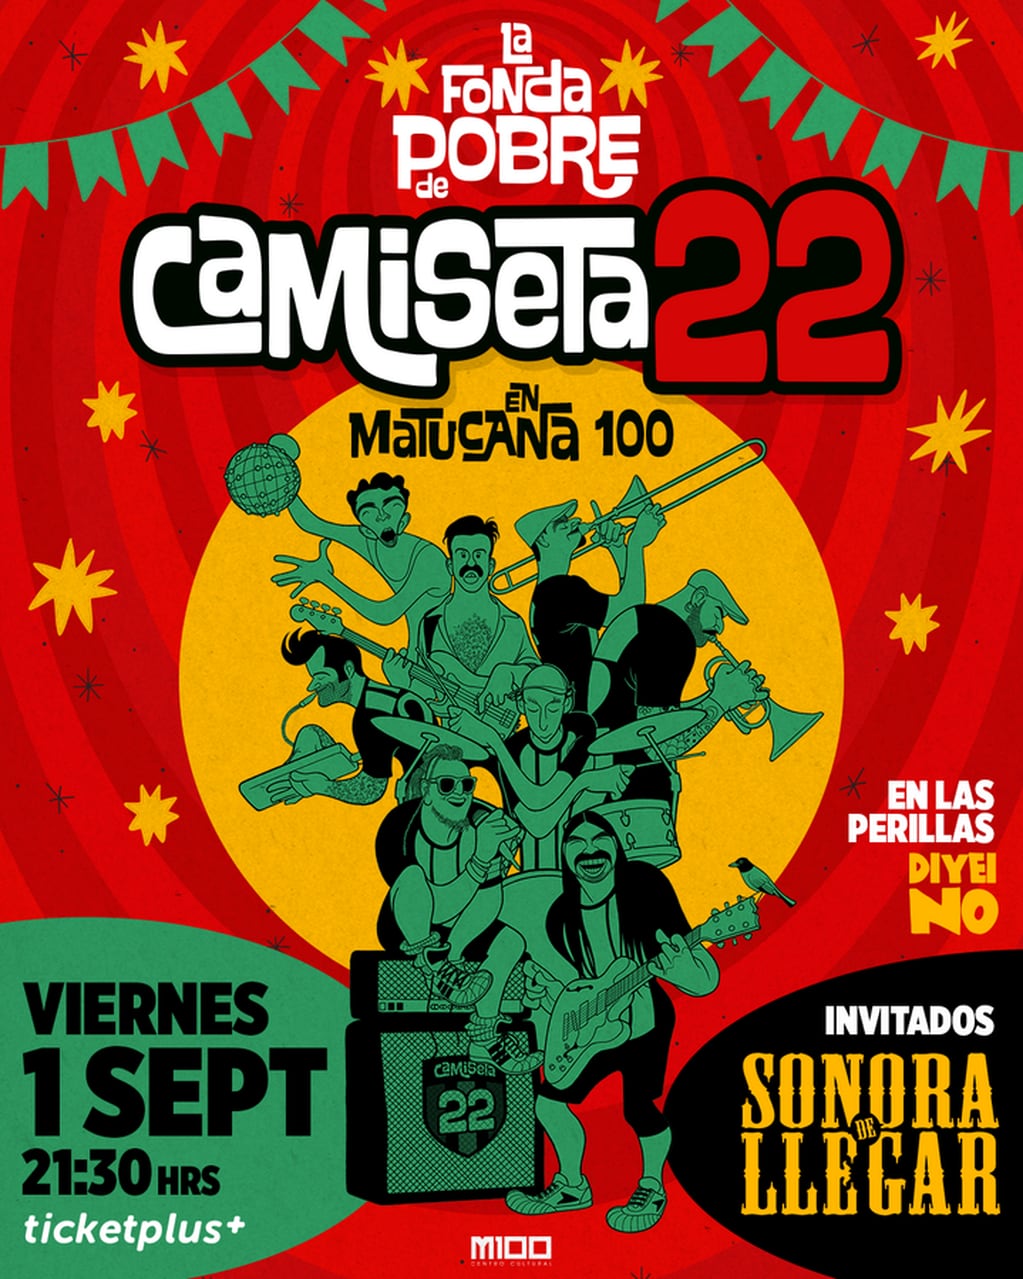 Camiseta 22 reversiona a Jorge González y anuncia su primer gran show en Matucana 100